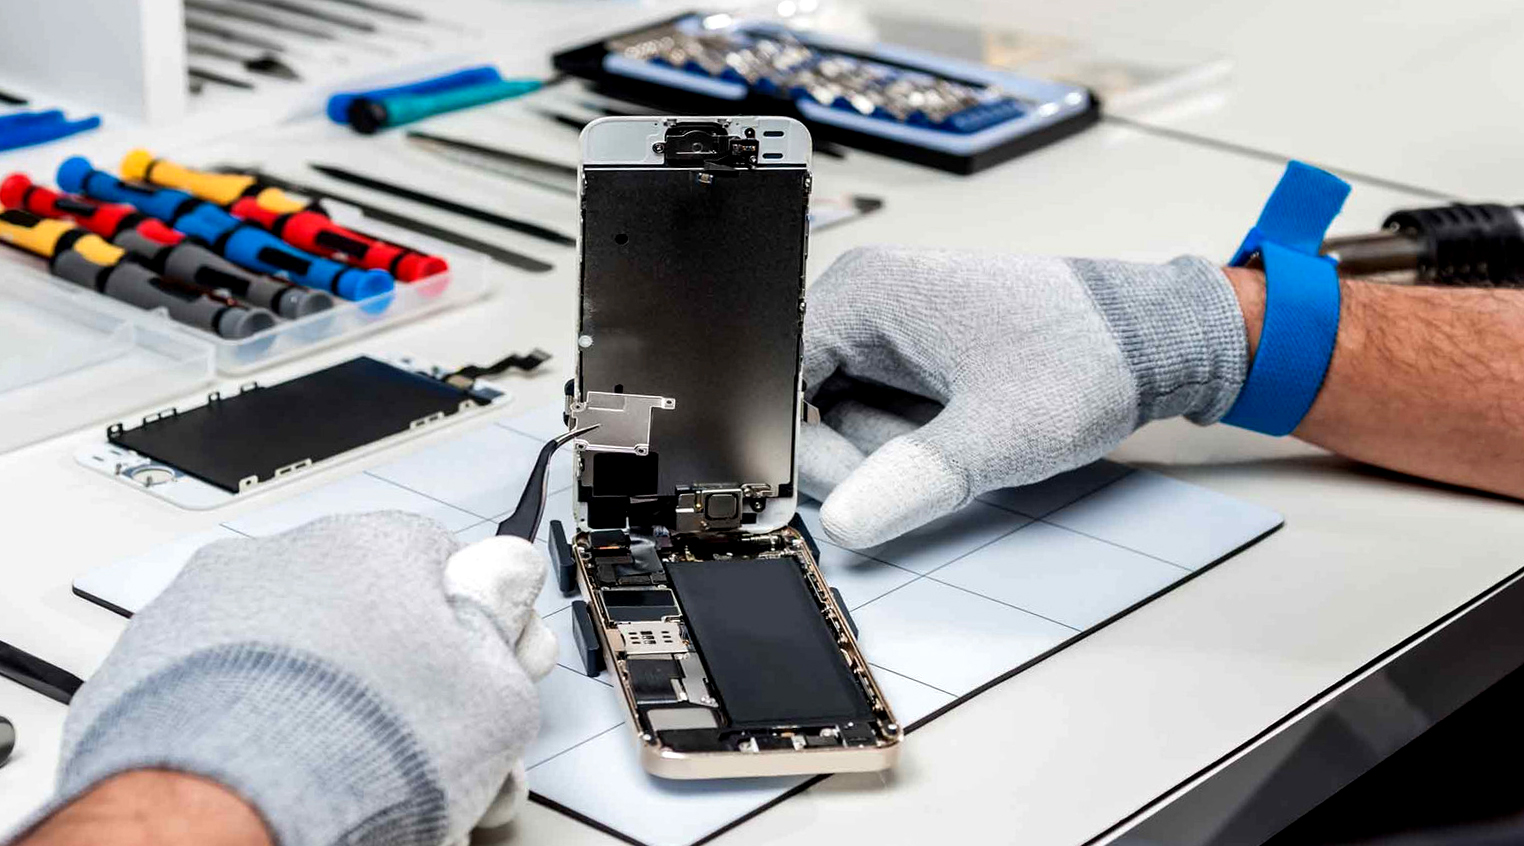 Komisja Europejska chce zobowiązać producentów smartfonów do zwiększenia żywotności baterii i produkcji części zamiennych przez 5 lat